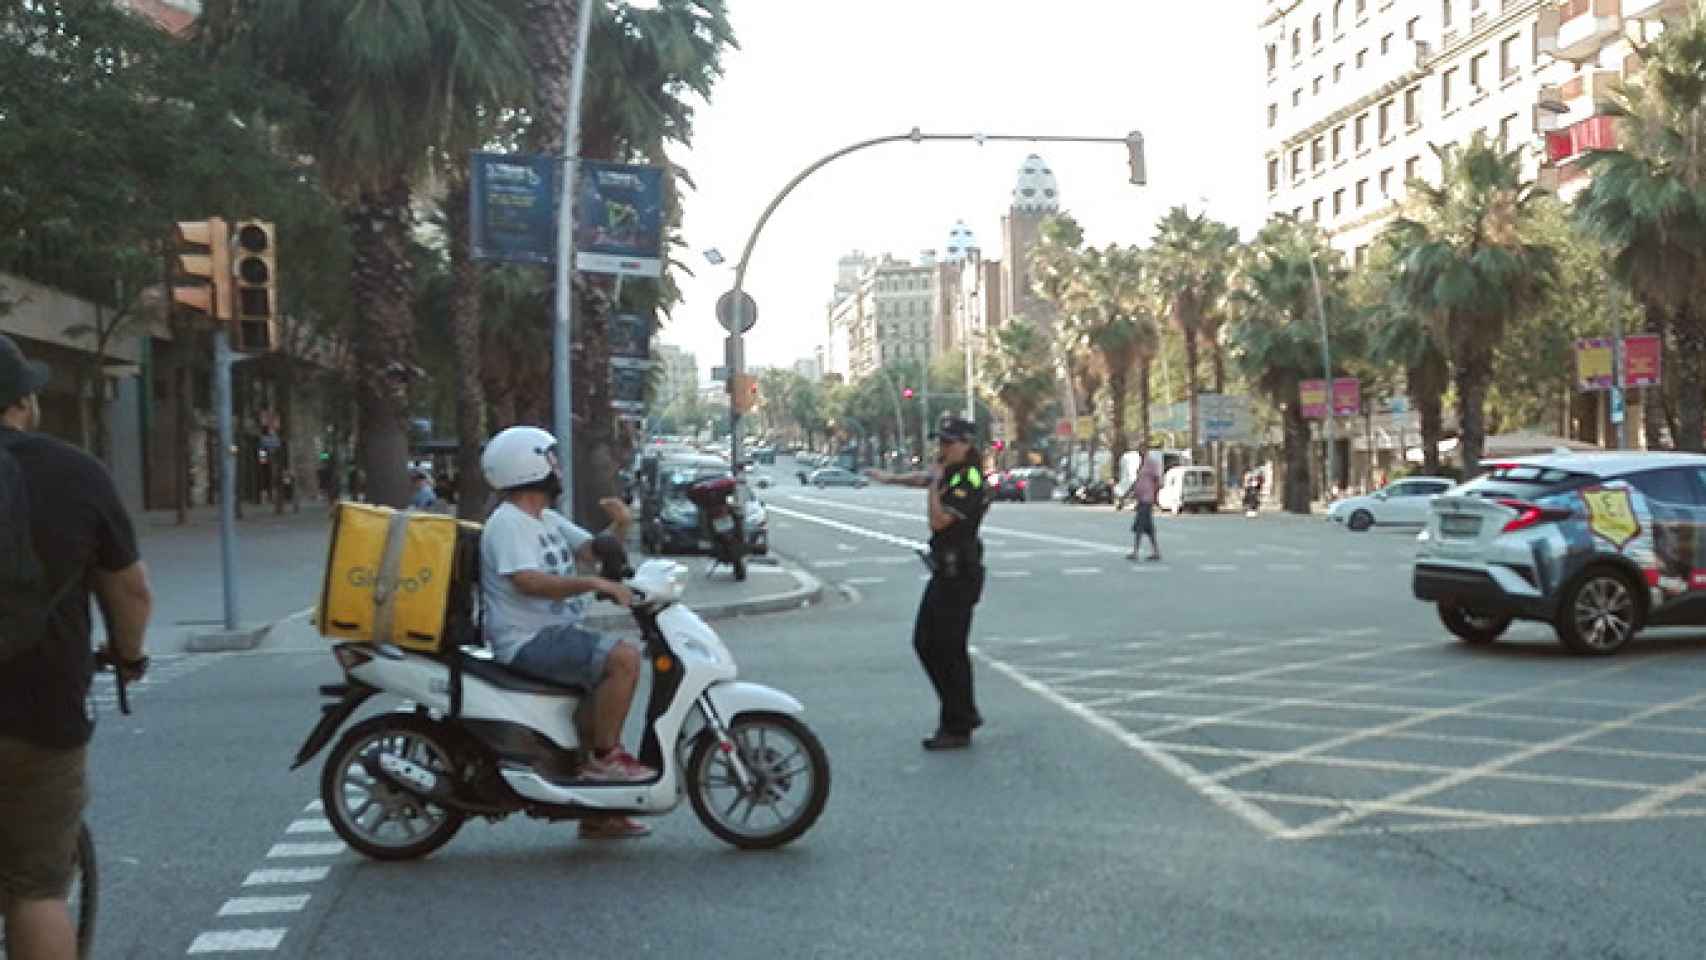 Una agente de policía dirige el tráfico junto a un semáforo apagado durante el corte de luz del 31 de julio en el cruce Casp y Marina de Barcelona / CG